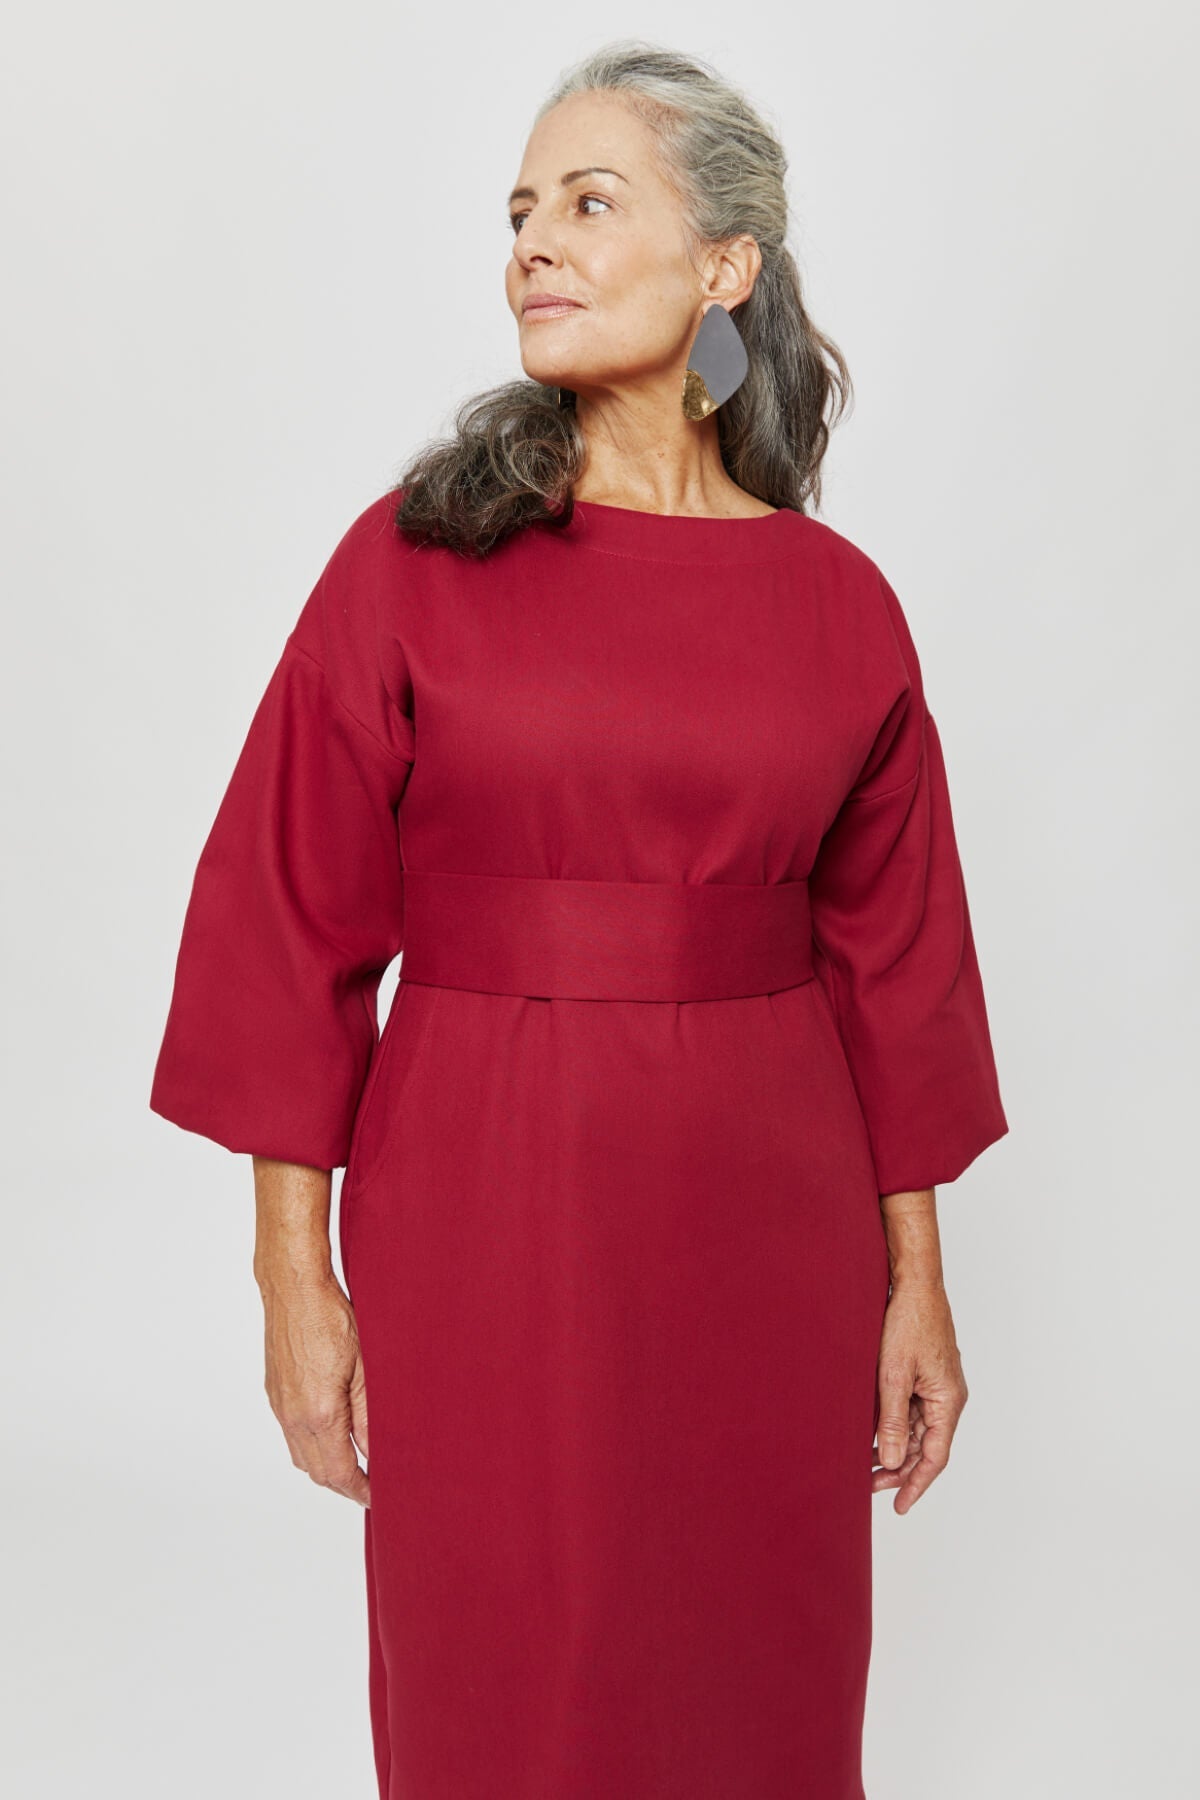 Rotes, langärmliges Kleid Stefanie aus 100% Bio-Baumwolle von Ayani